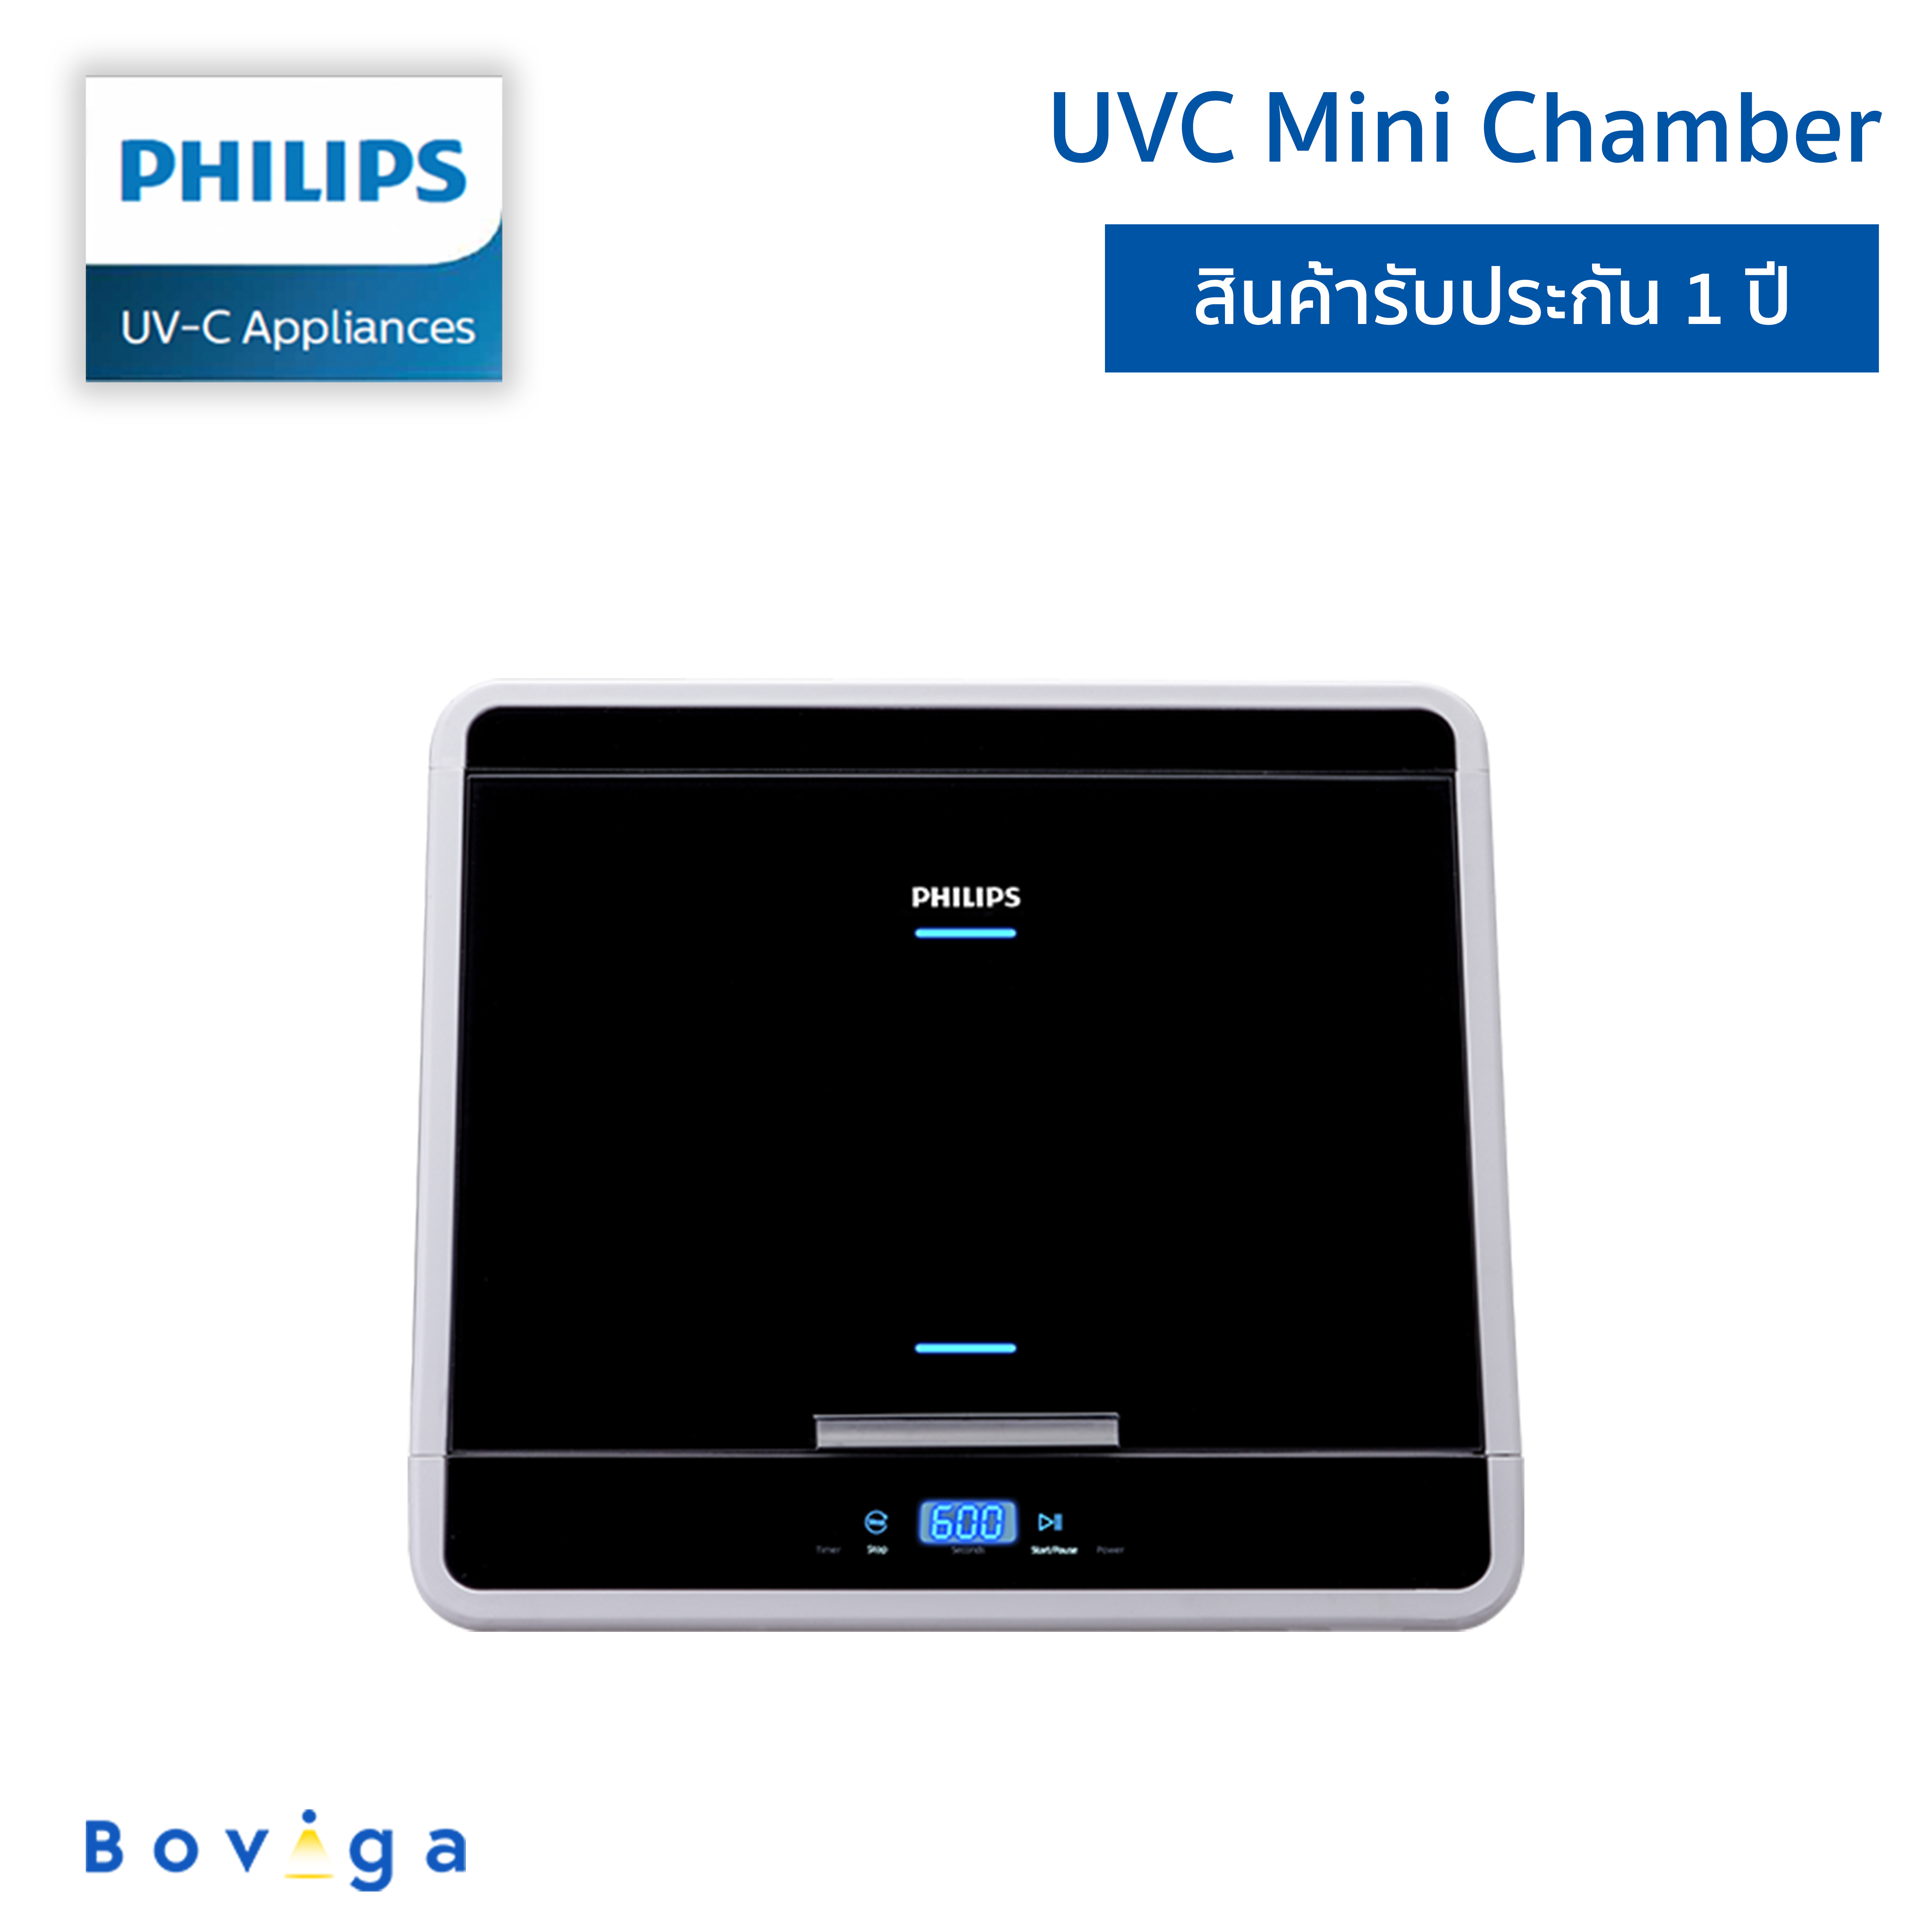 ฟิลิปส์ UVC ตู้ยับยั้งการทำงานของเชื้อโรค ขนาด mini ความจุ 48 ลิตร | Philips UVC MINI CHAMBER 48L